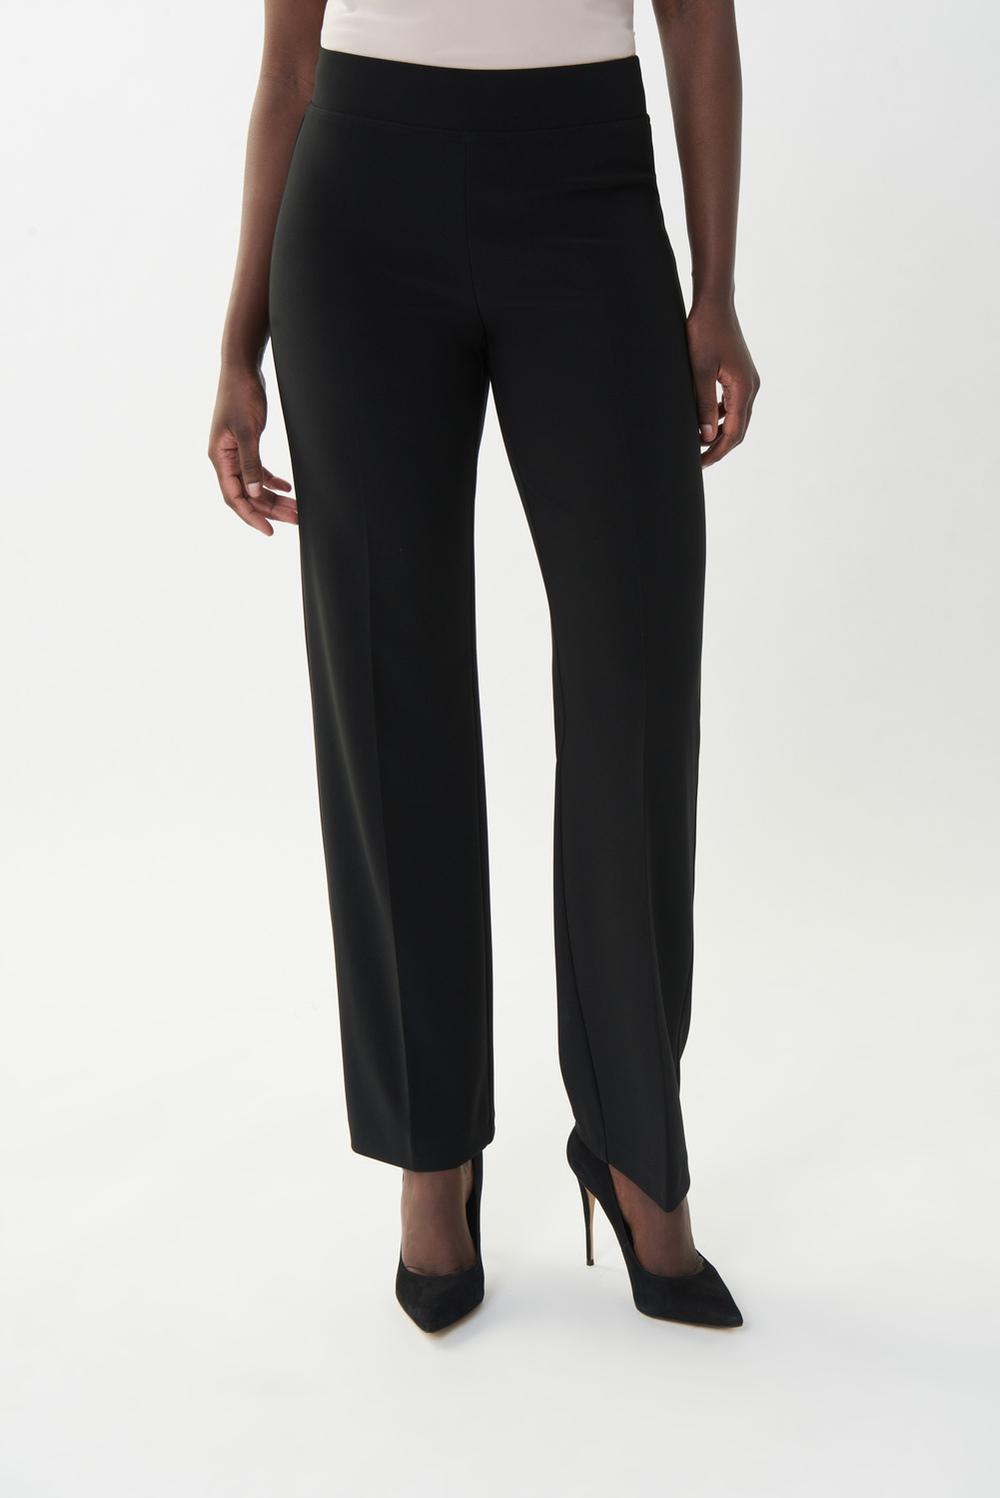 Pantalon droit, plis marqués Modèle 153088S24. Noir